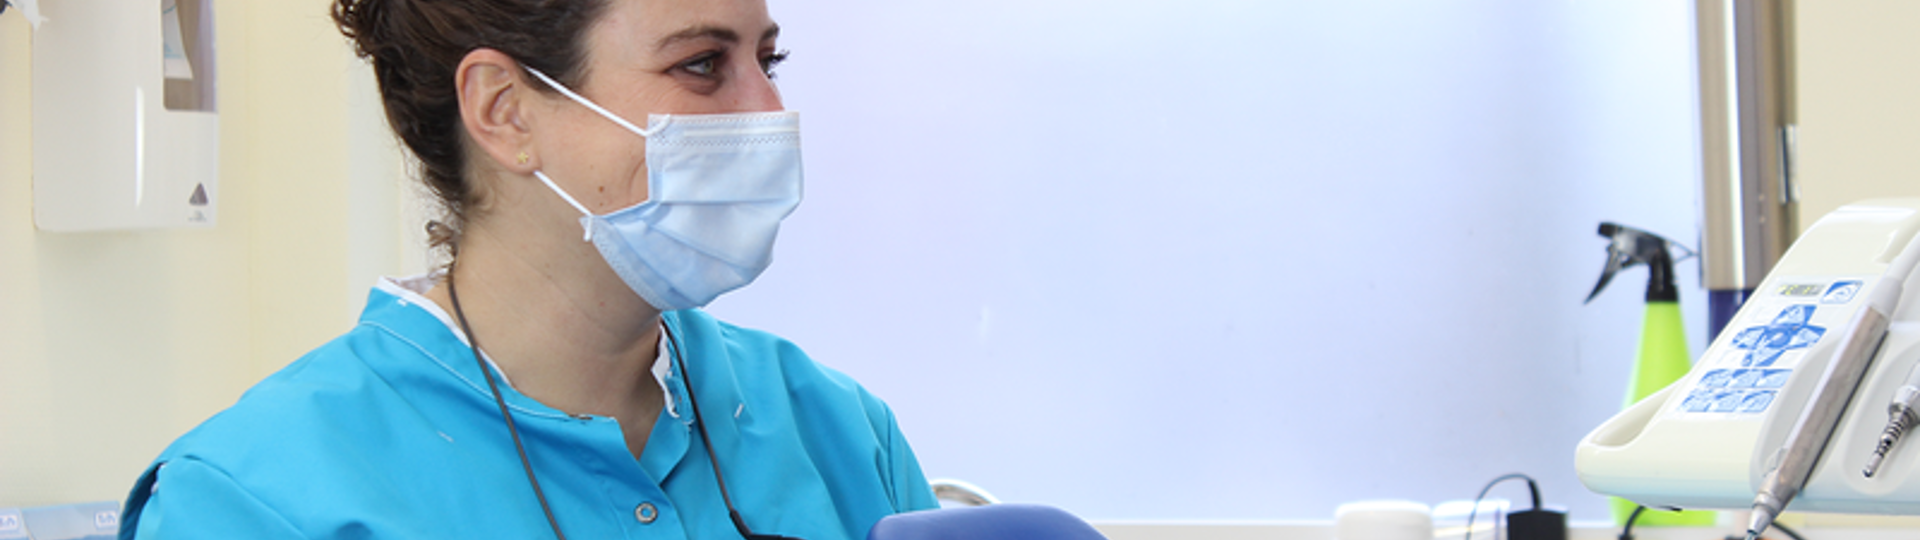 5 manieren voor tandartsen en mondhygiënisten om rugklachten te verminderen